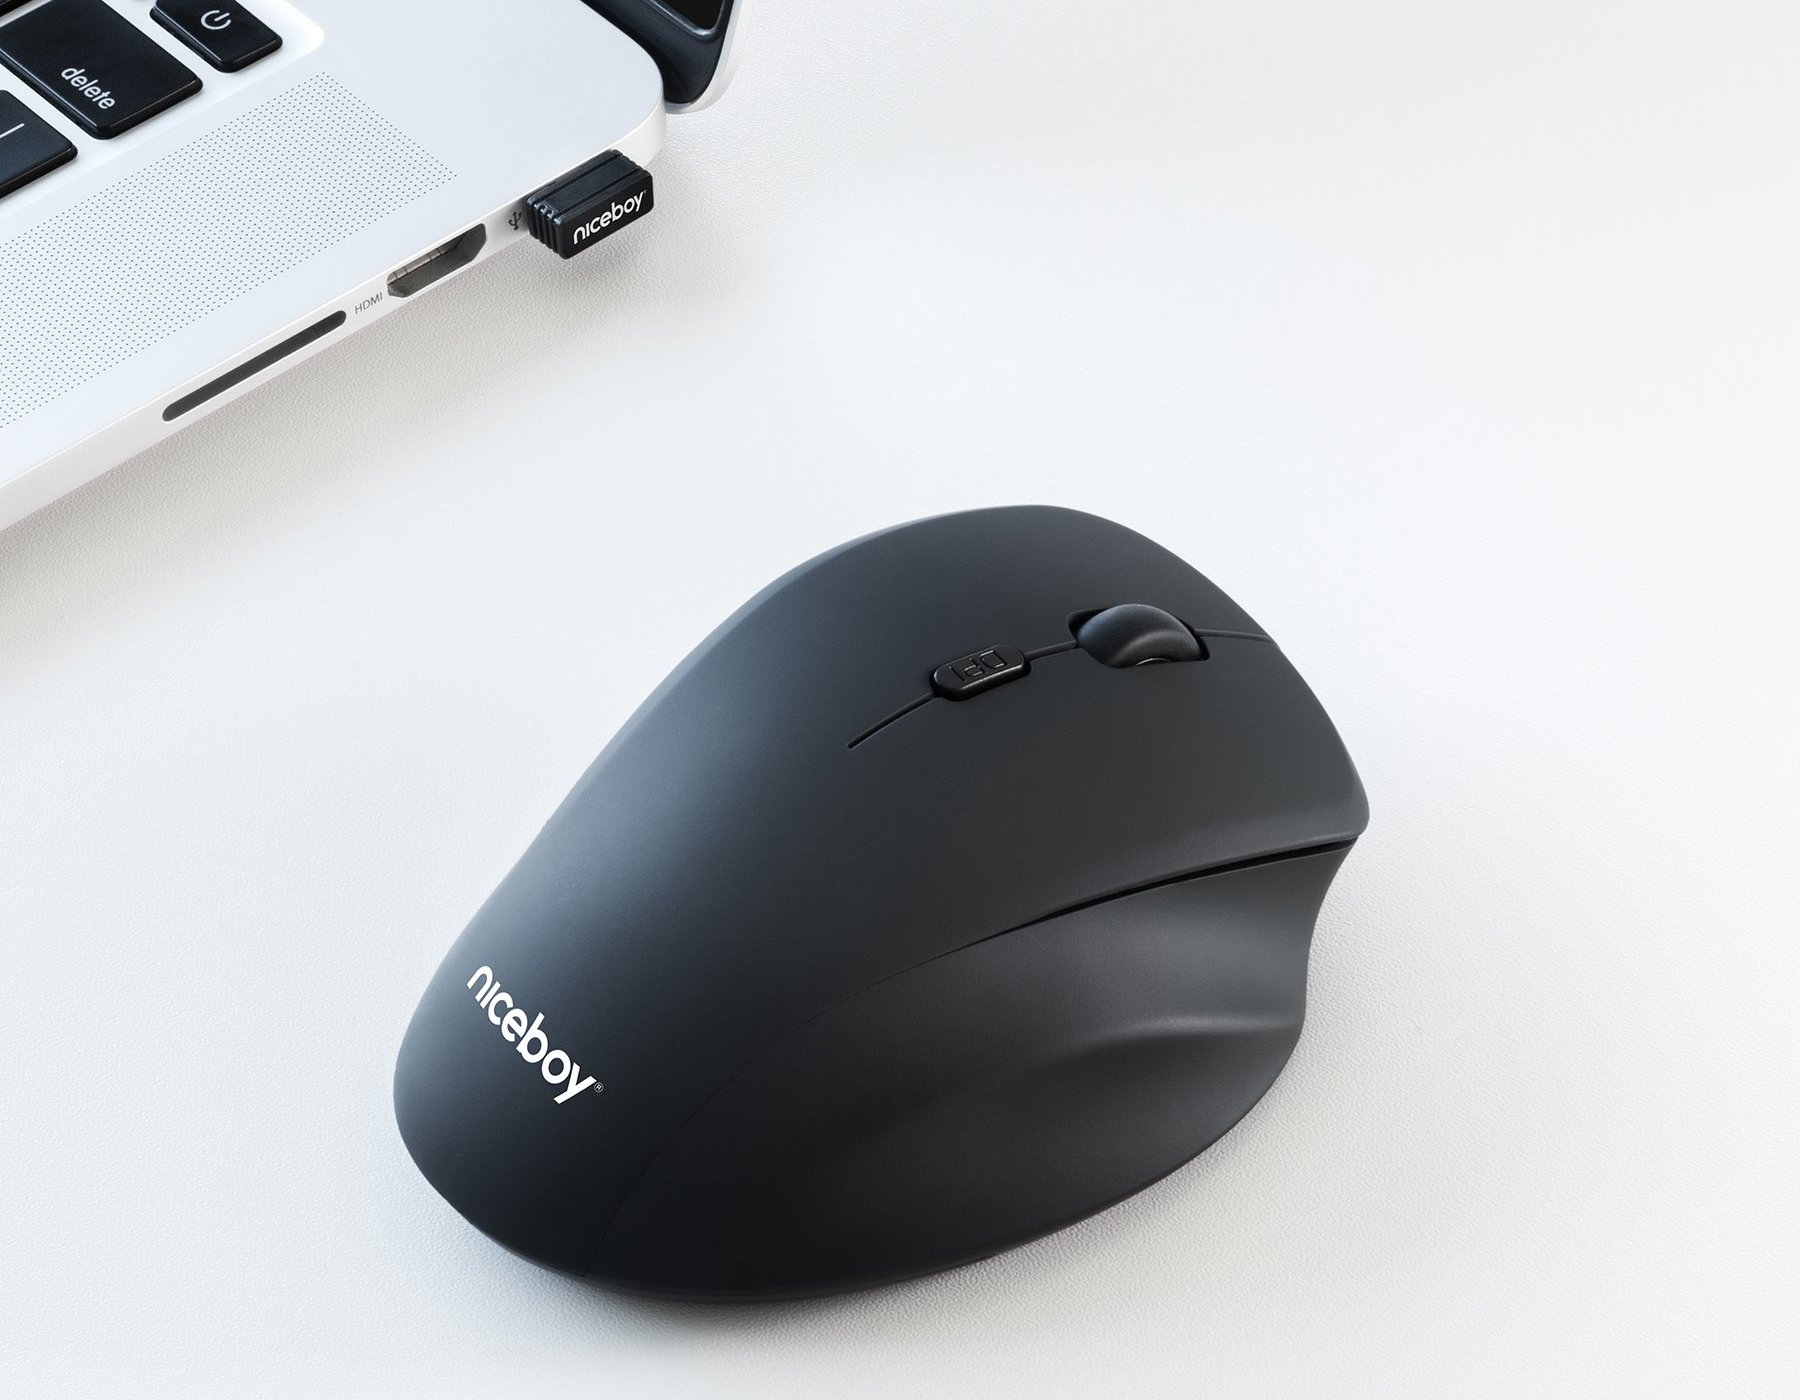 Bezdrátová myš Niceboy Office M20 komunikuje s PC či notebookem až na vzdálenost 10 m přes přiložený 2,4GHz USB přijímač.